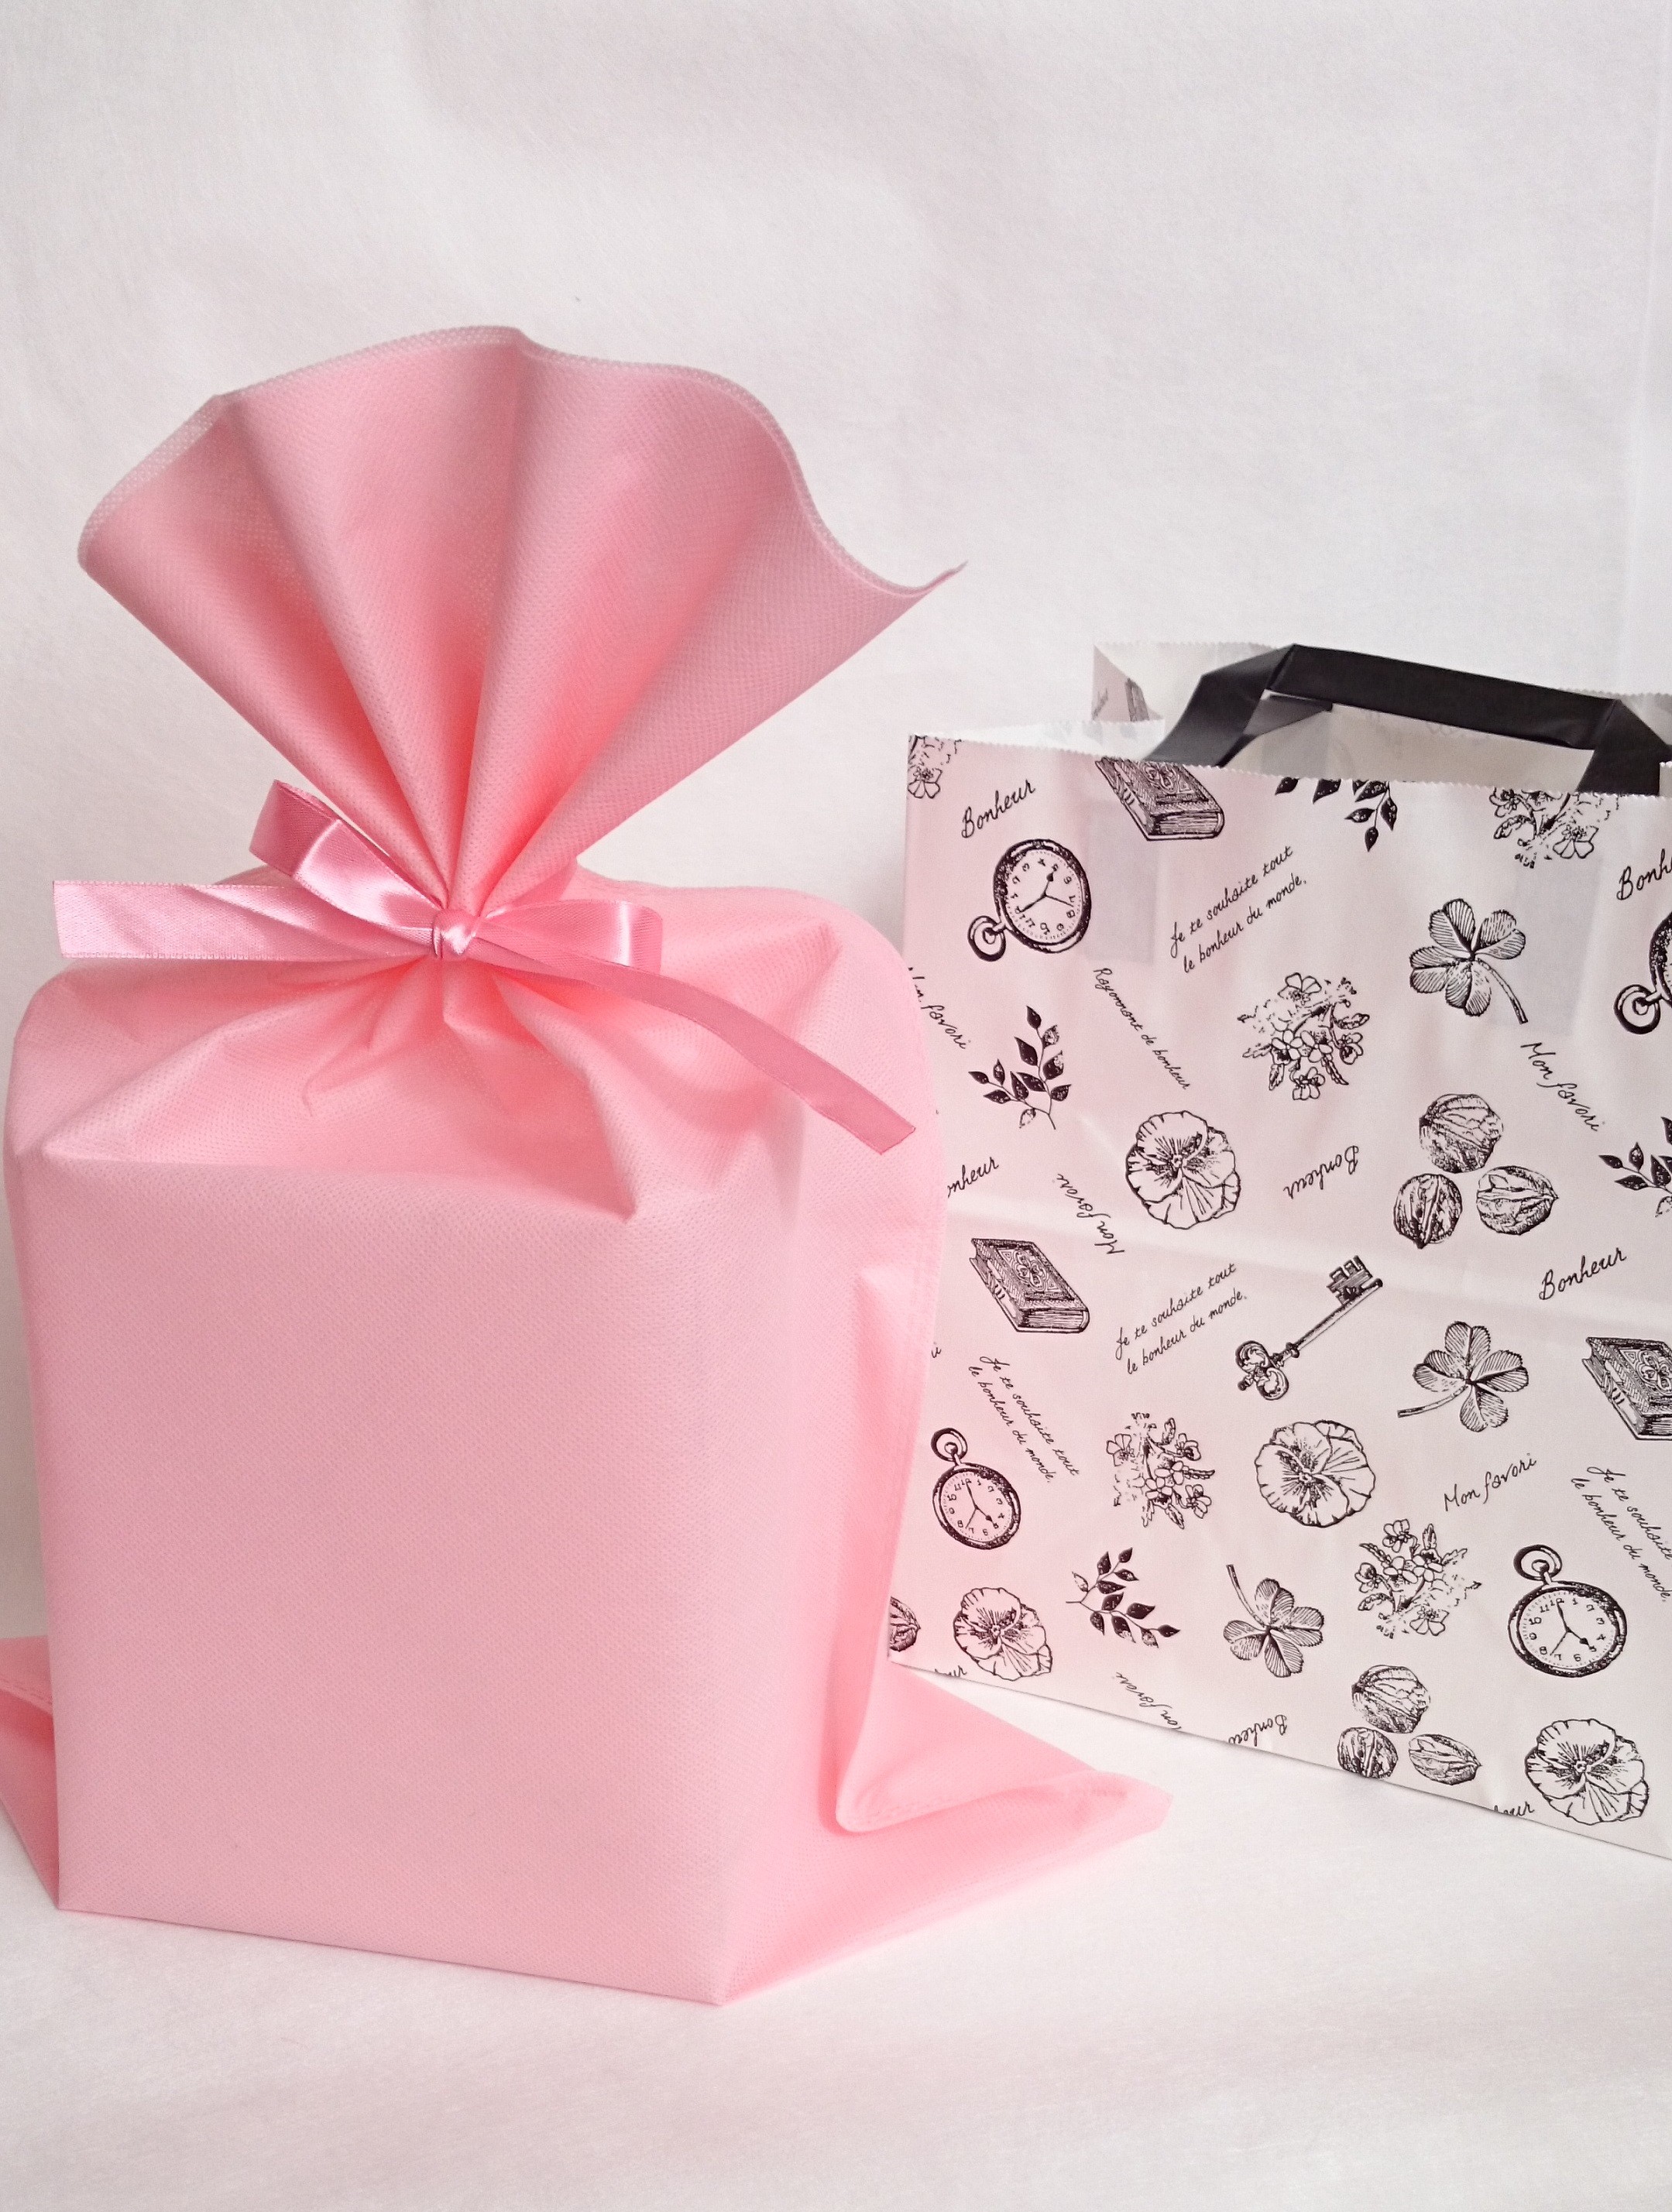 ラッピングbタイプ ピンク 陶器アレンジ用ラッピング お渡し袋のセット Iichi ハンドメイド クラフト作品 手仕事品の通販